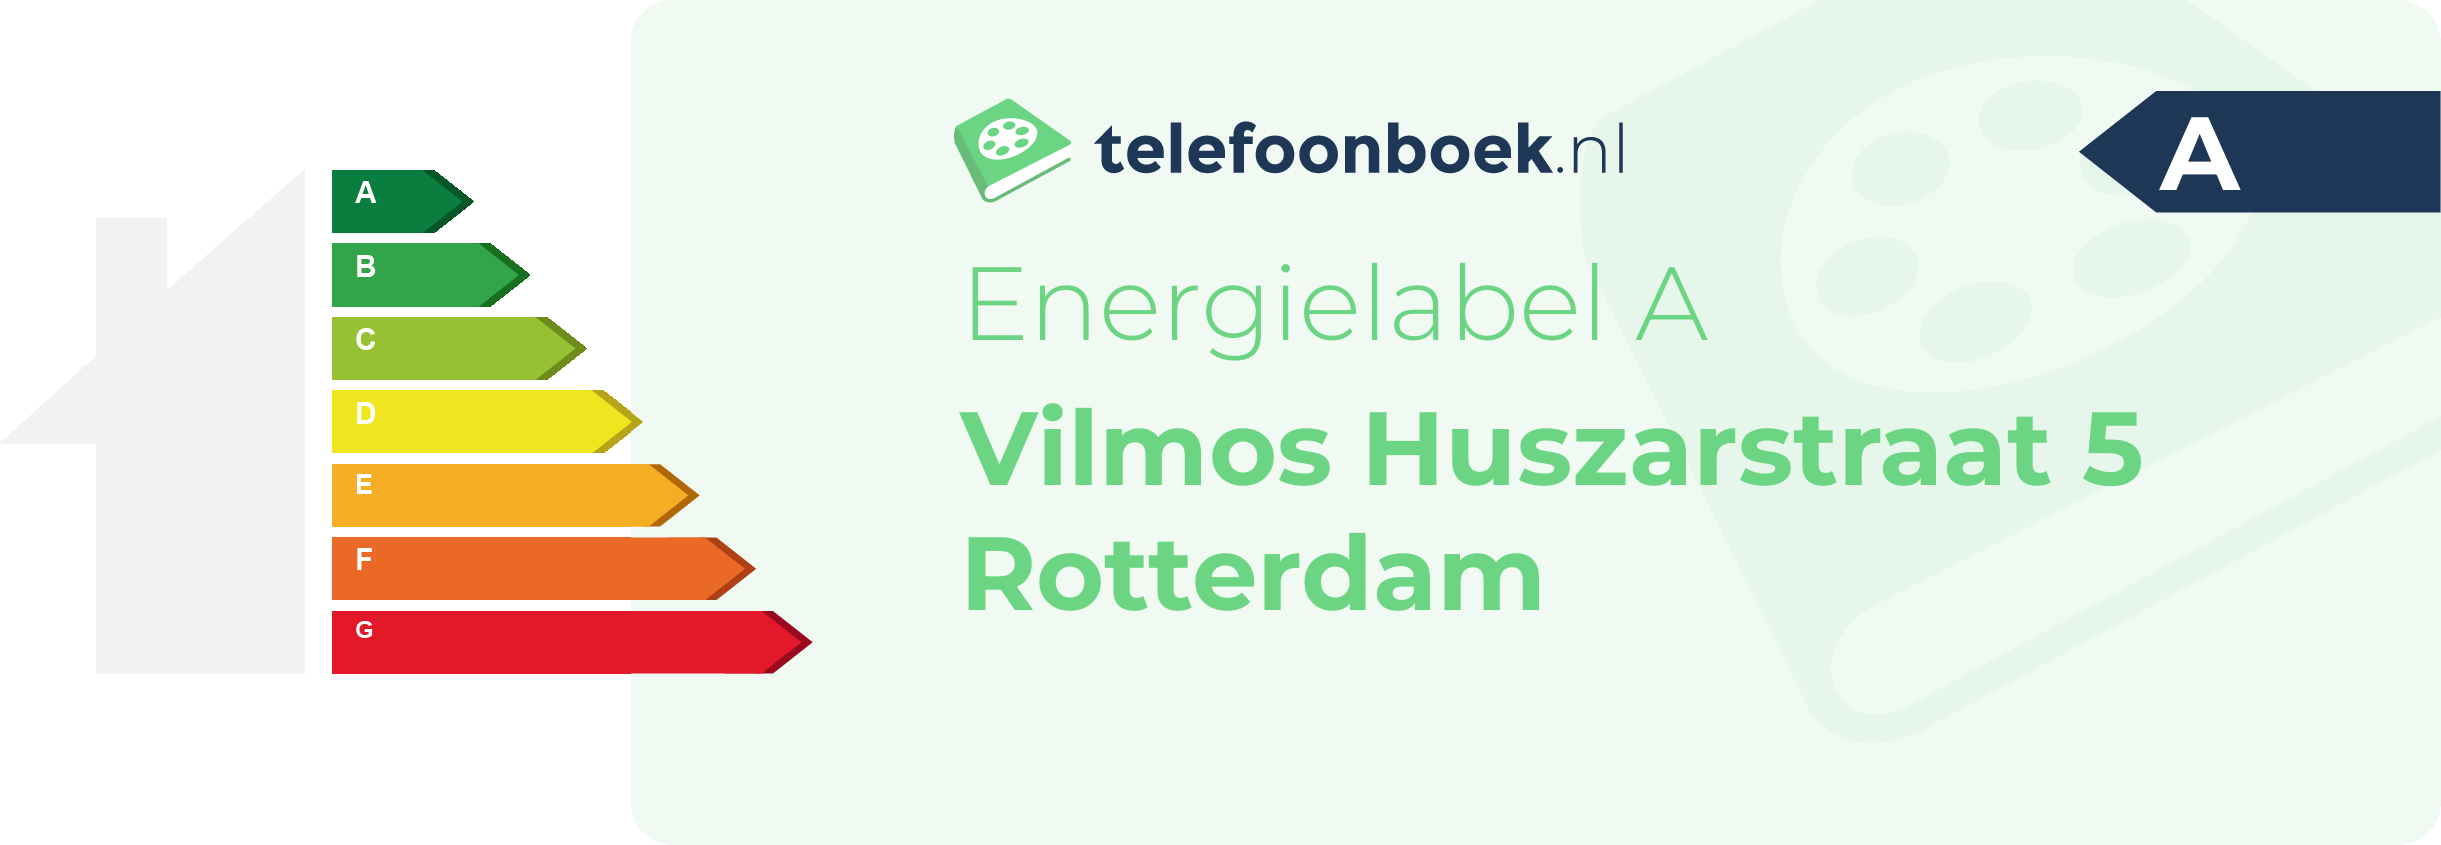 Energielabel Vilmos Huszarstraat 5 Rotterdam